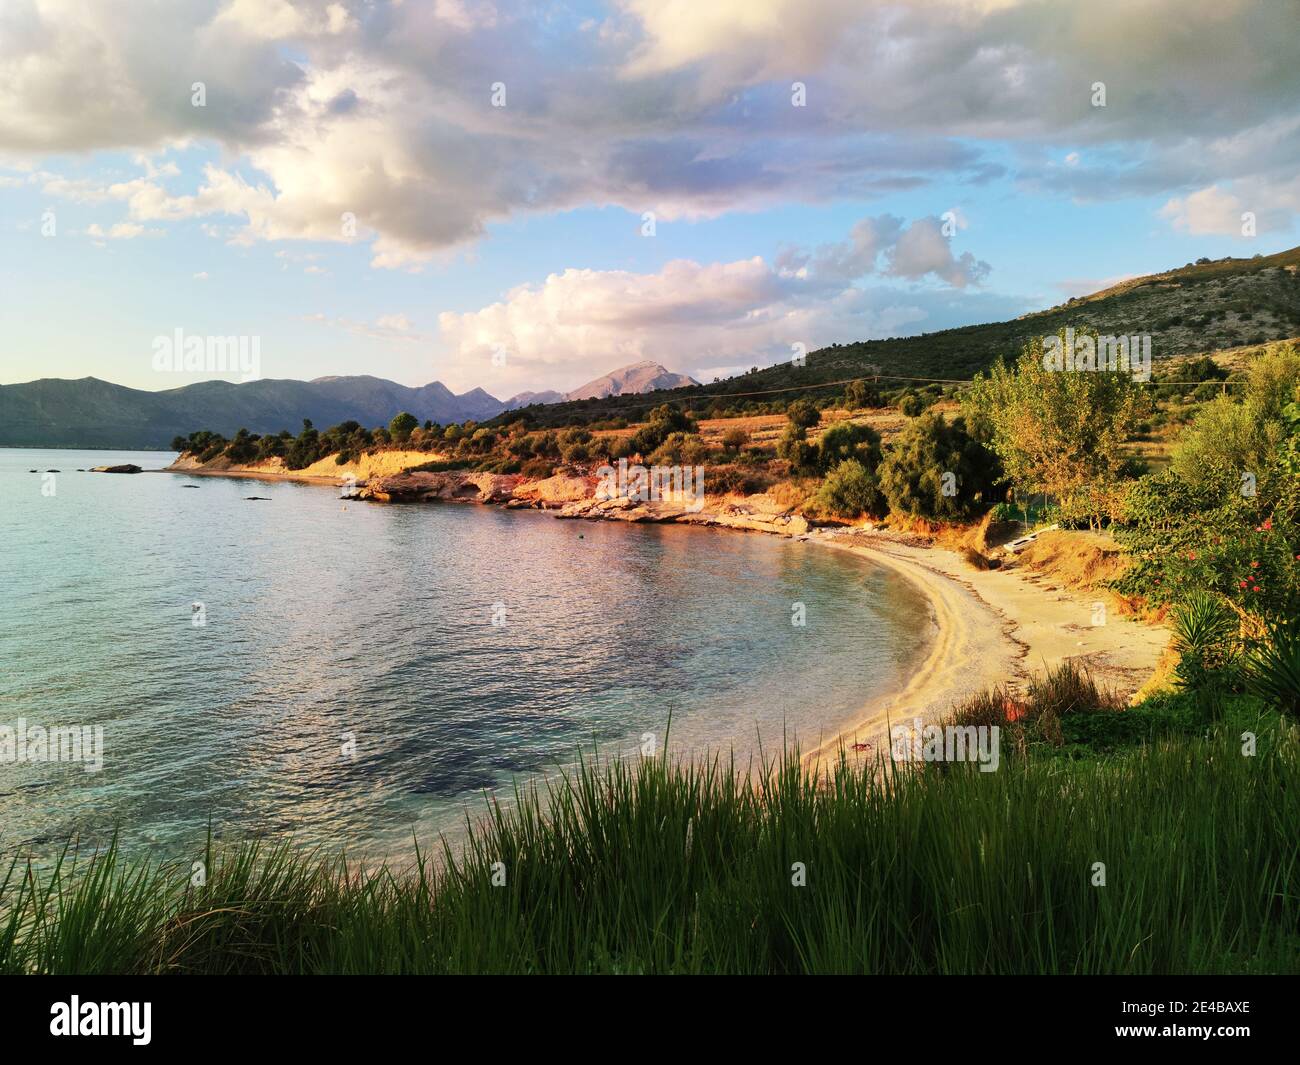 Bucht am Festland im Sund der Insel Kalamos, Ionisches Meer, Mittelgriechenland Foto de stock